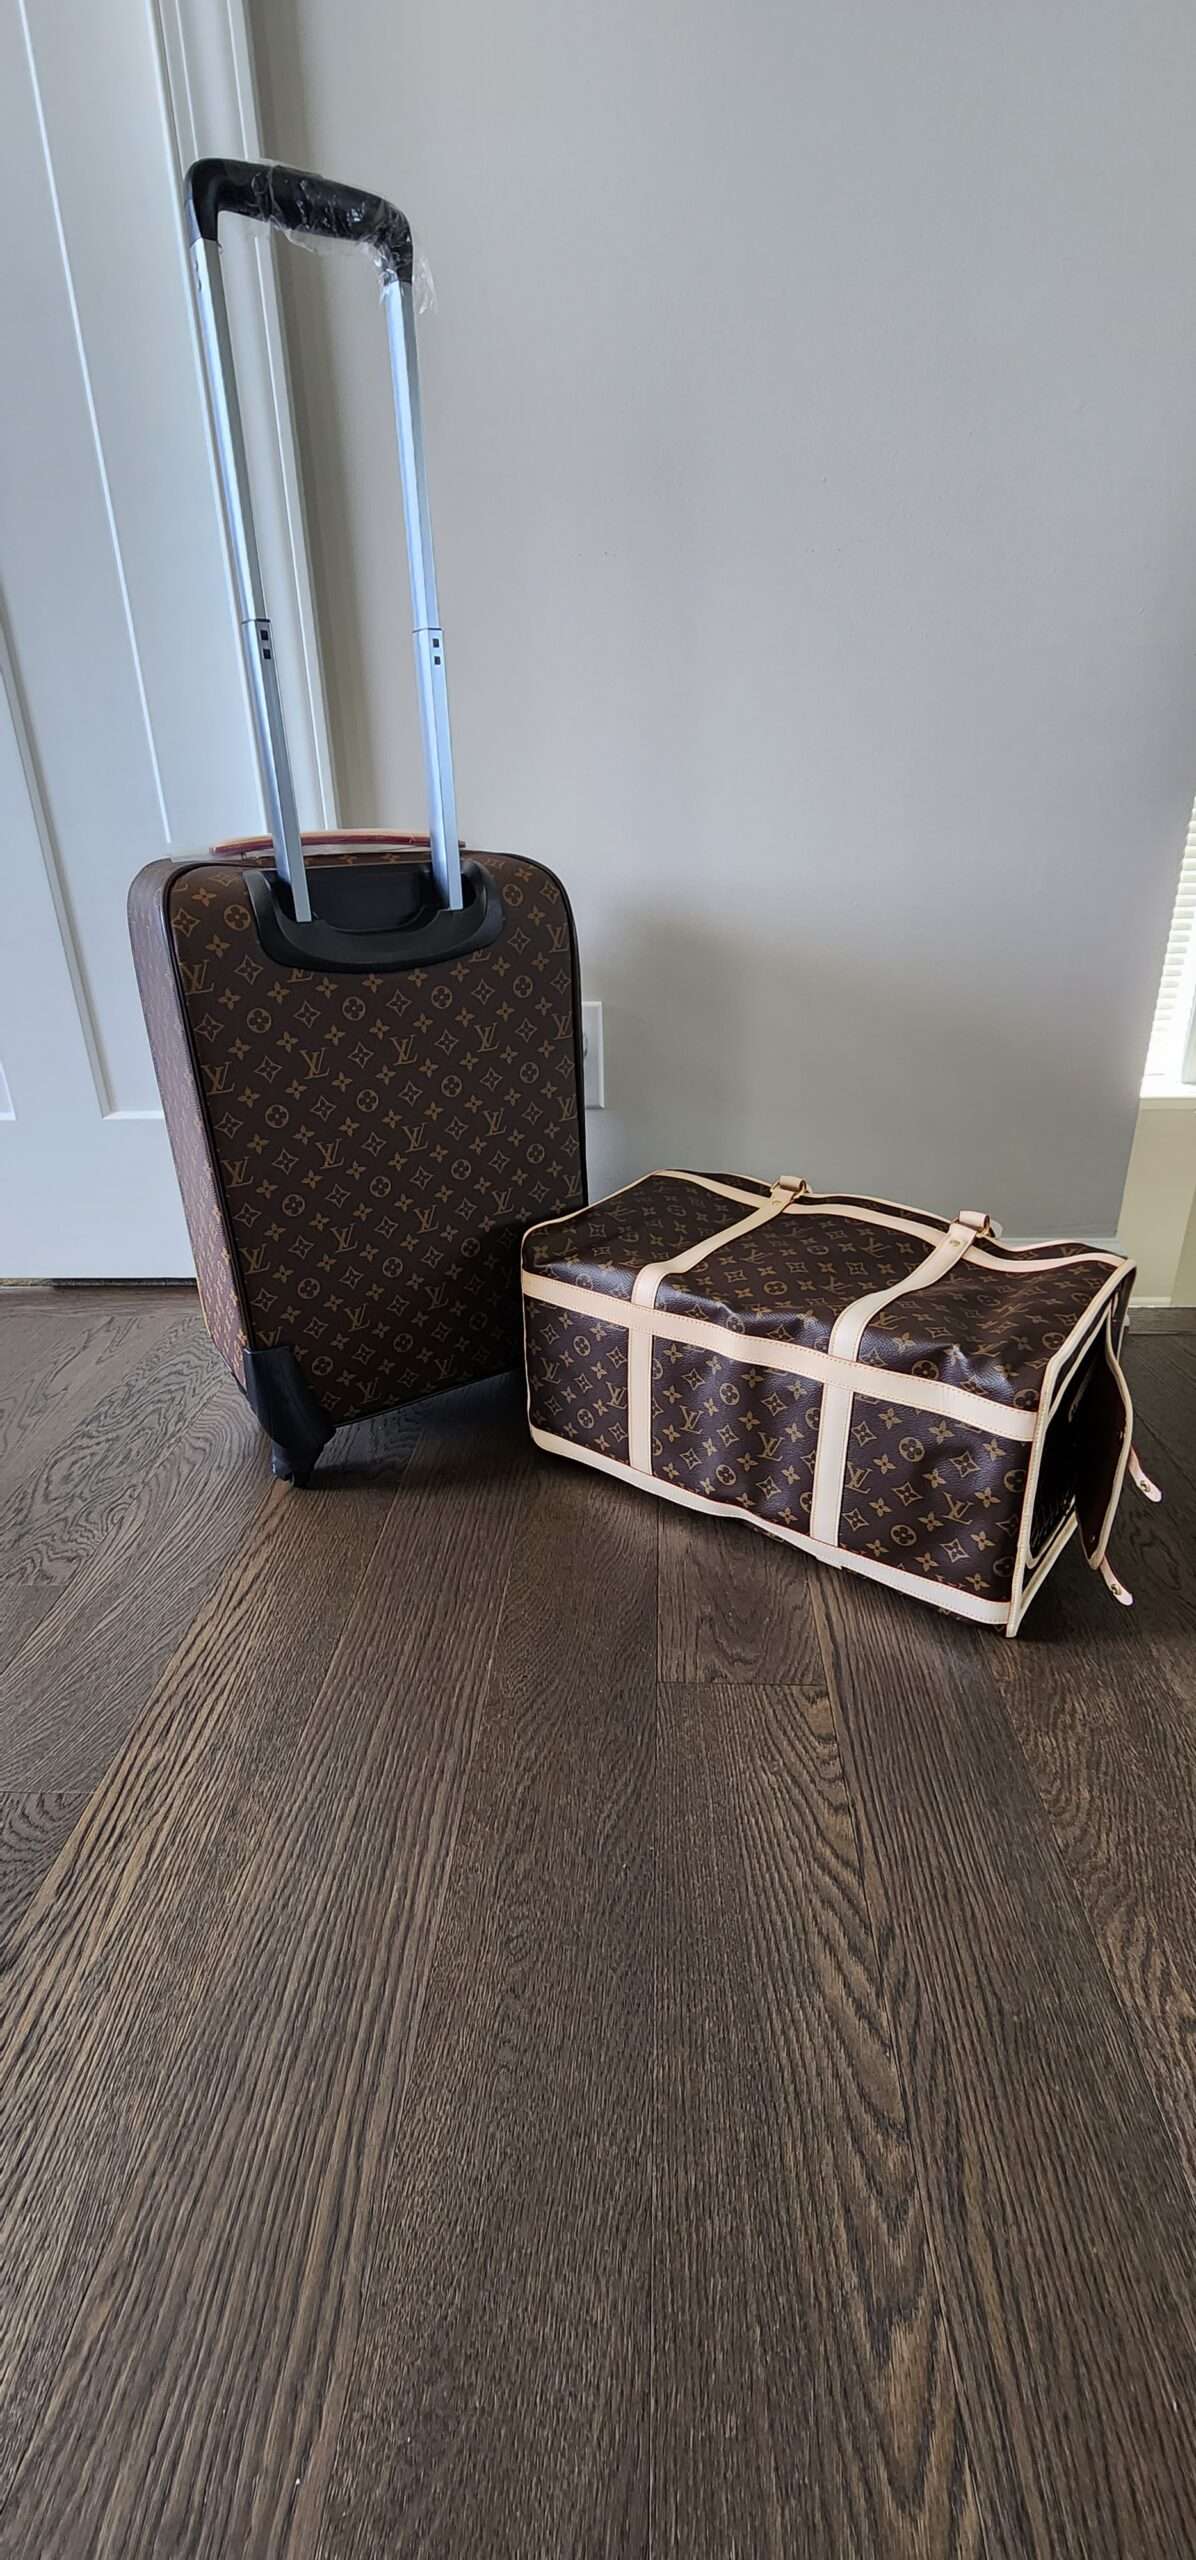 Louis Vuitton travel luggage set